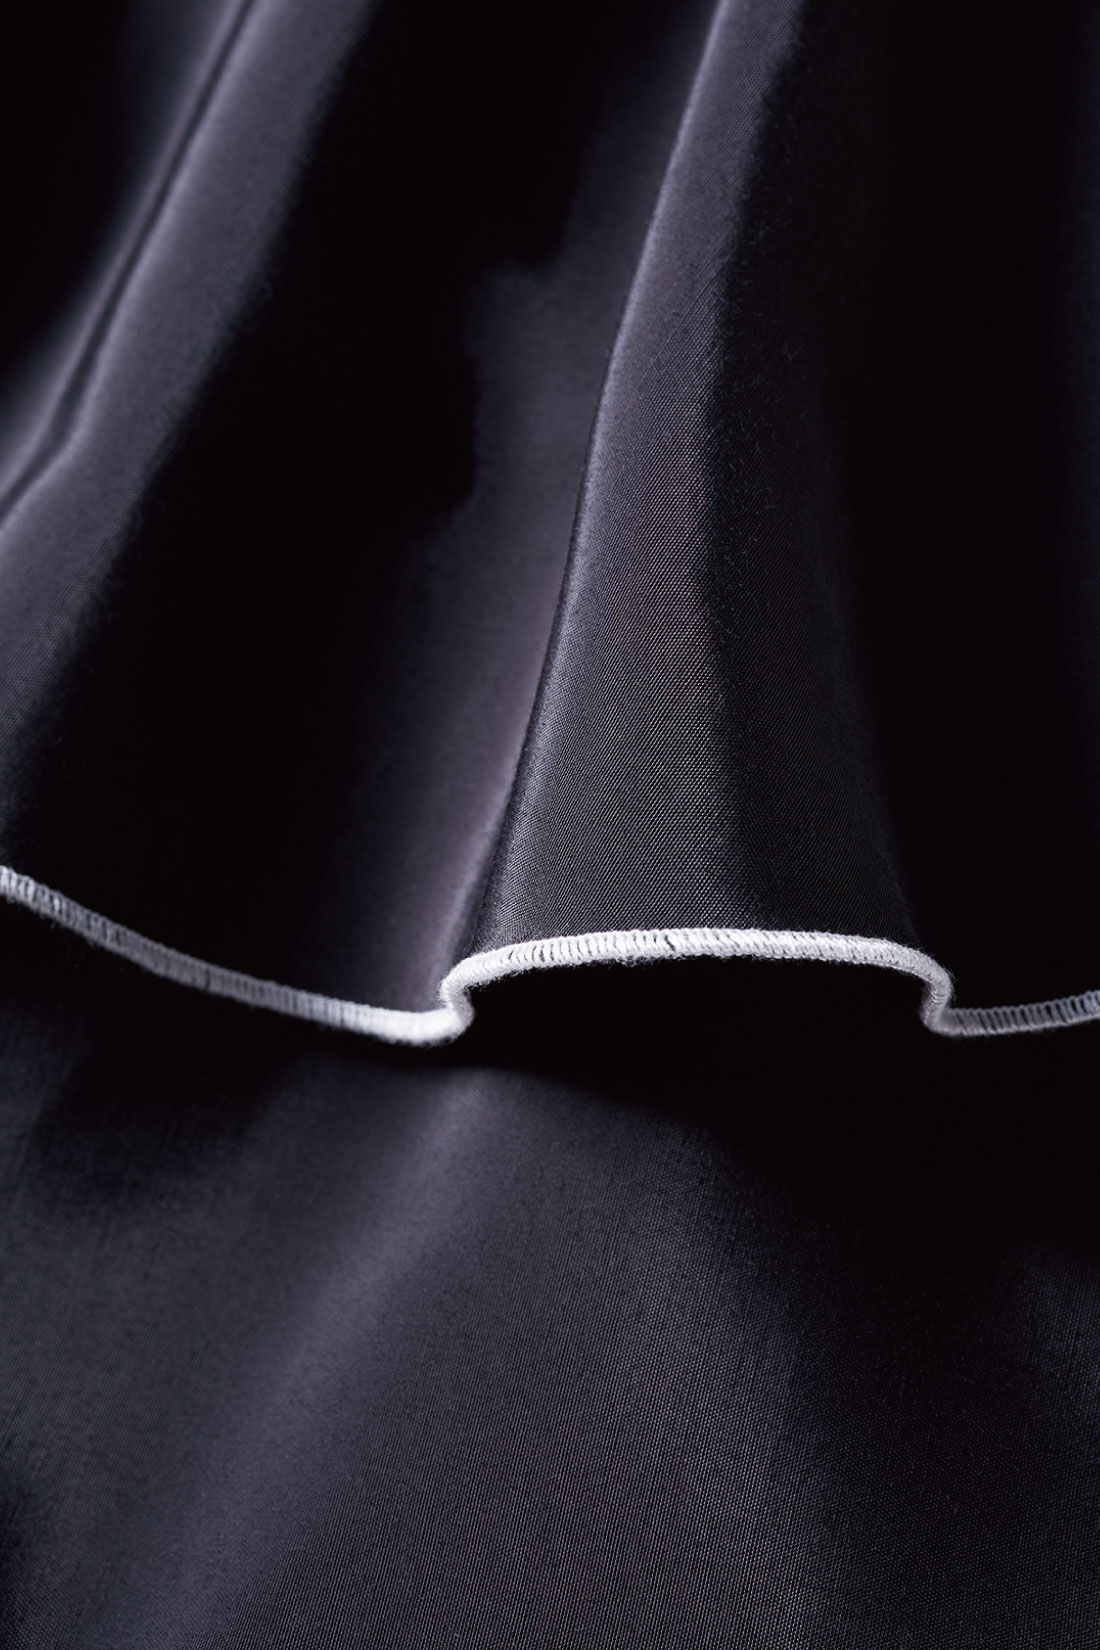 MEDE19F|MEDE19F×SCREEN KAORI　フリルショートシャツ〈ブラック〉|レーヨン・ポリエステルの、光沢のあるサテン素材。